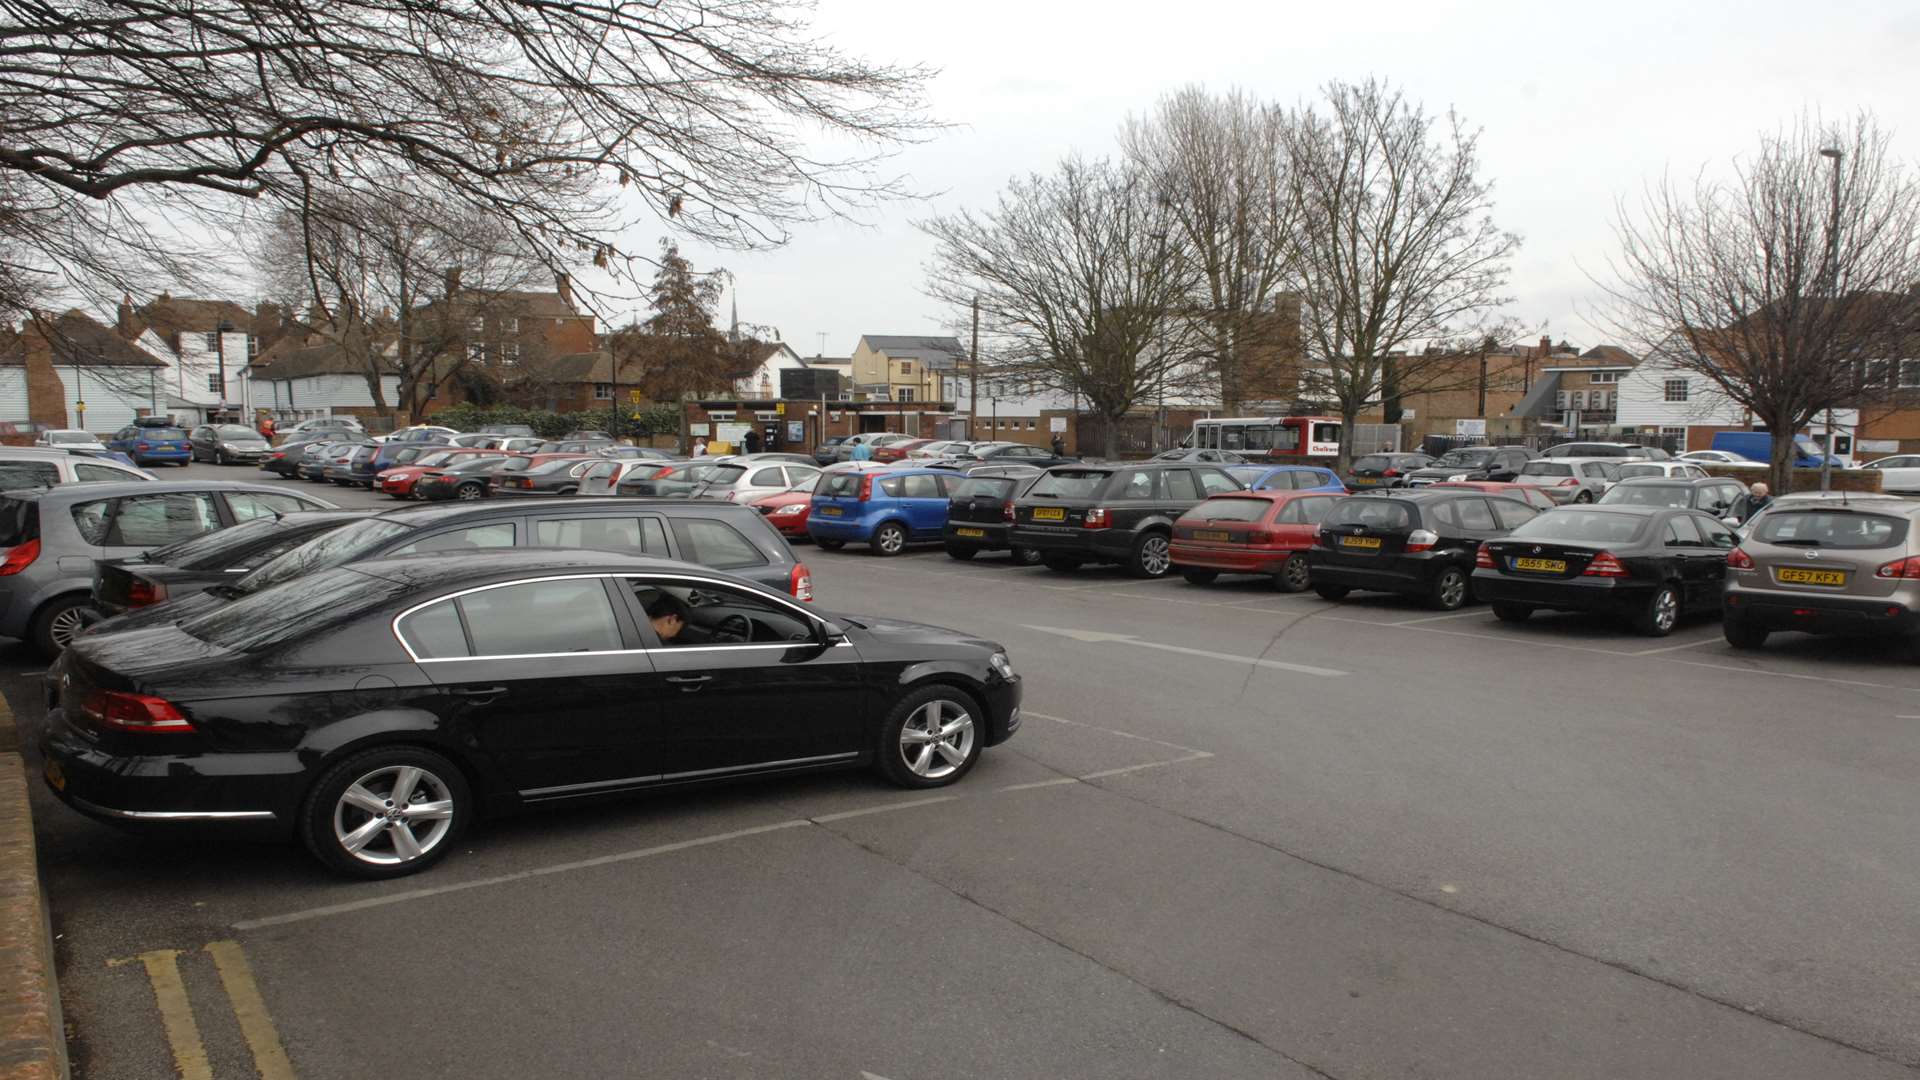 Faversham car park where the theft took place.